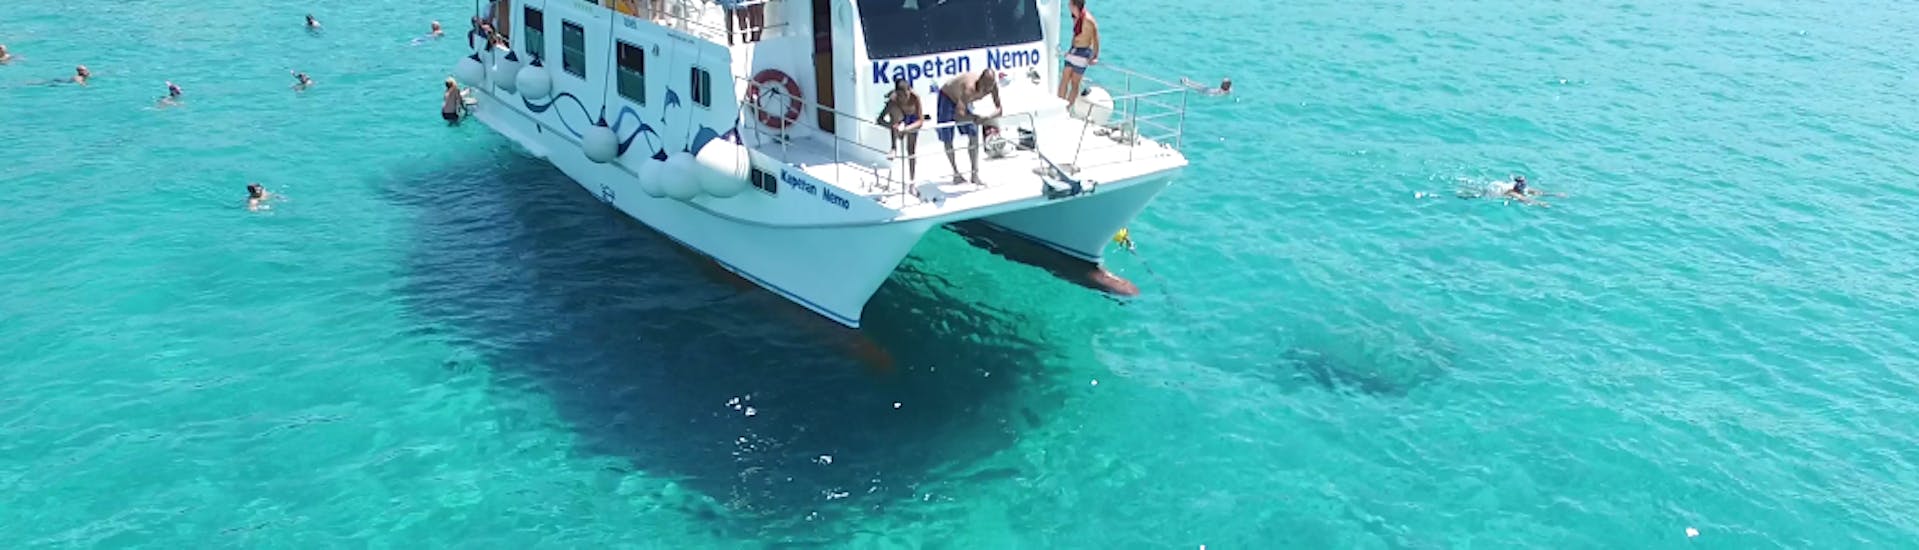 De catamaran die vaart door de zee tijdens de Catamarantocht naar Rab, Grgur & het Golden Bay strand met snorkelen met Kapetan Nemo & Mali Pin Krk.